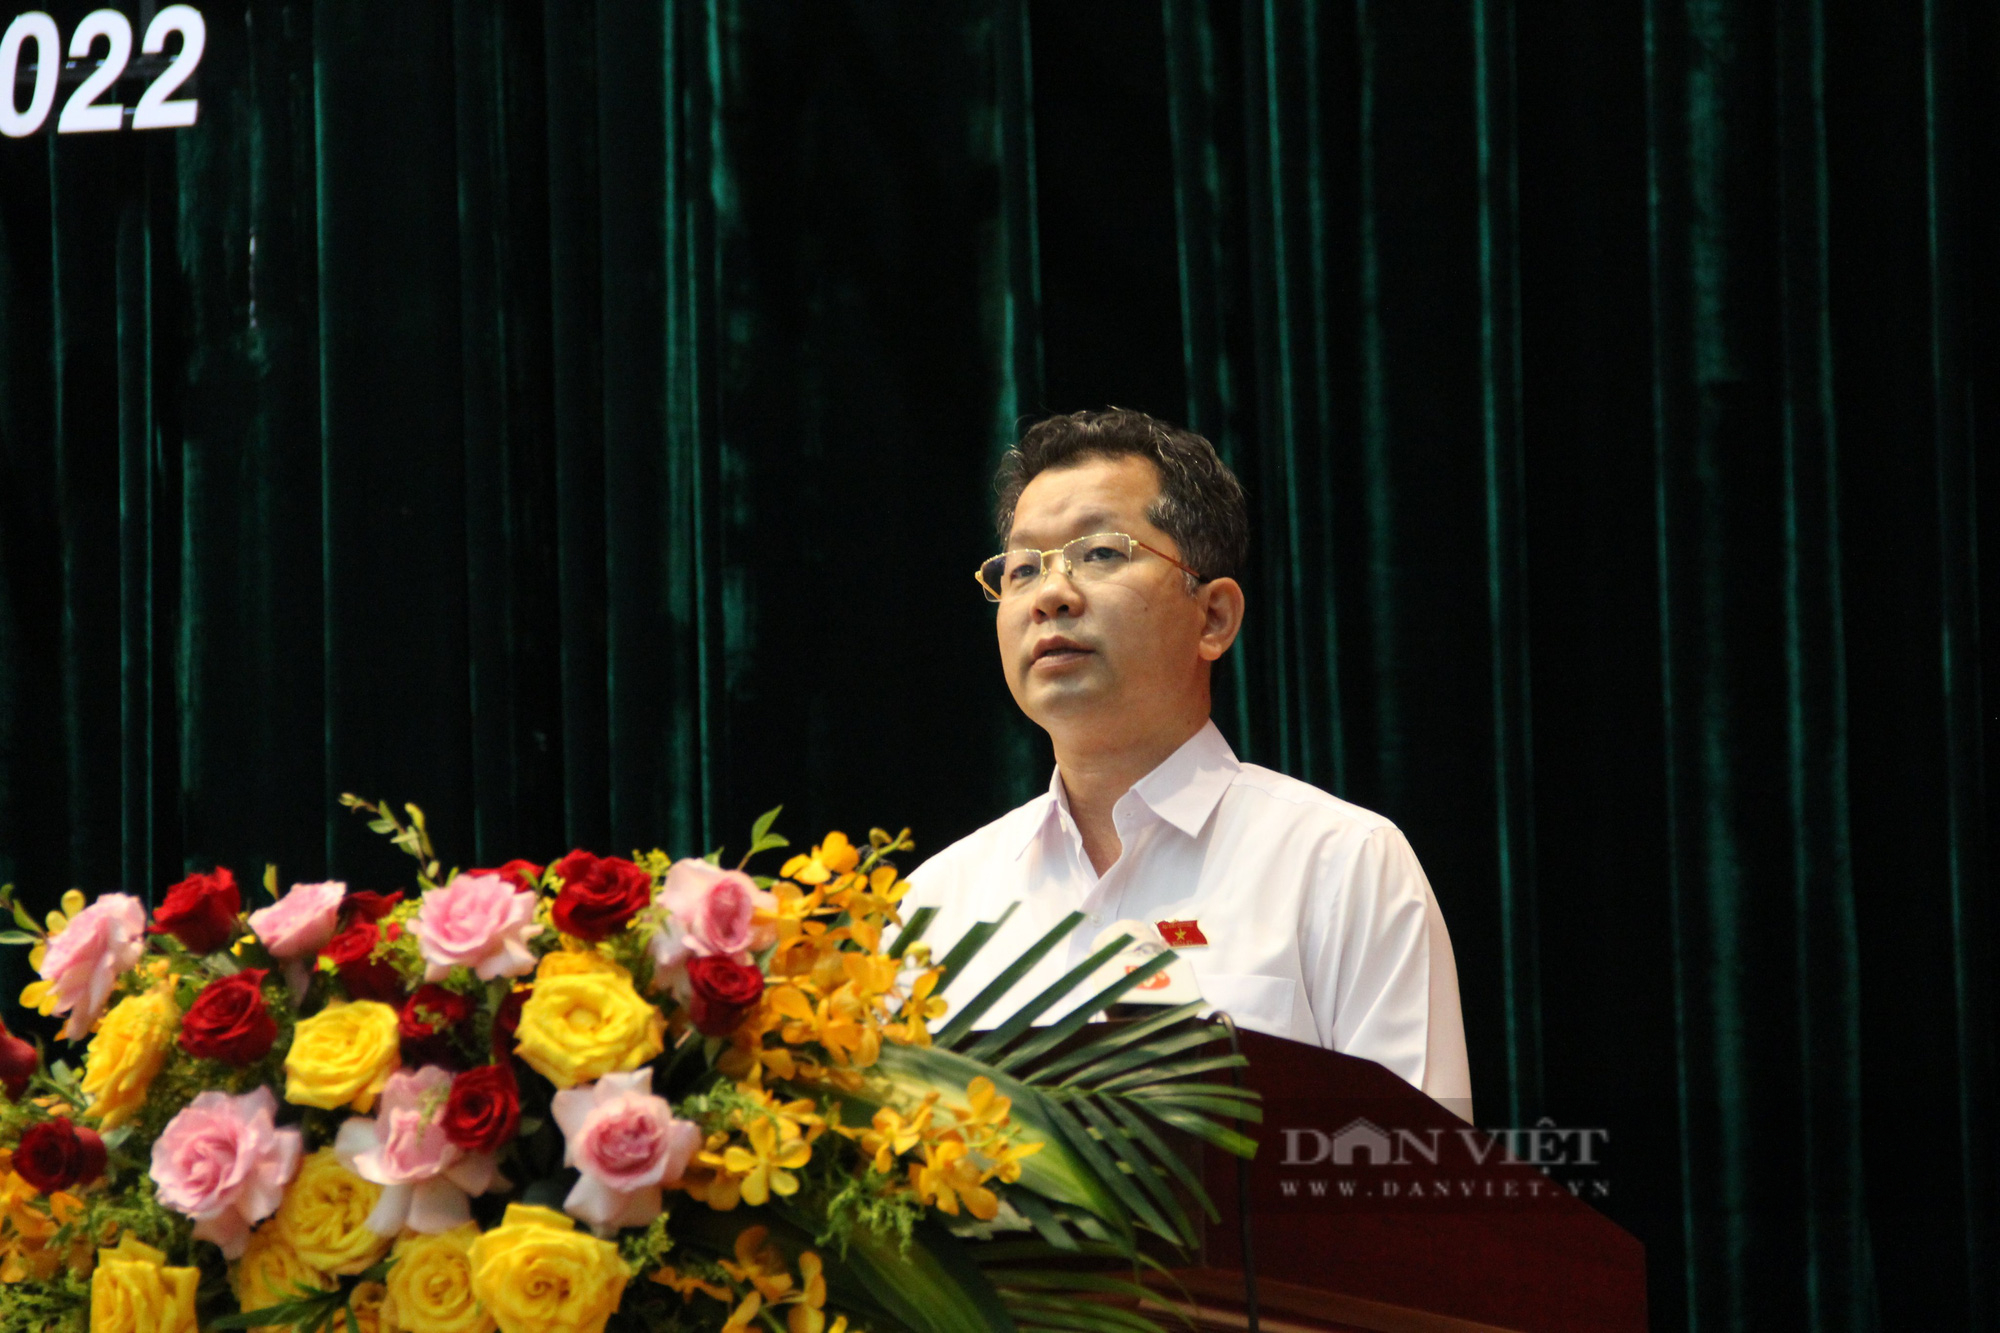 Đà Nẵng: Nóng vấn đề tham nhũng tại buổi tiếp xúc cử tri - Ảnh 2.